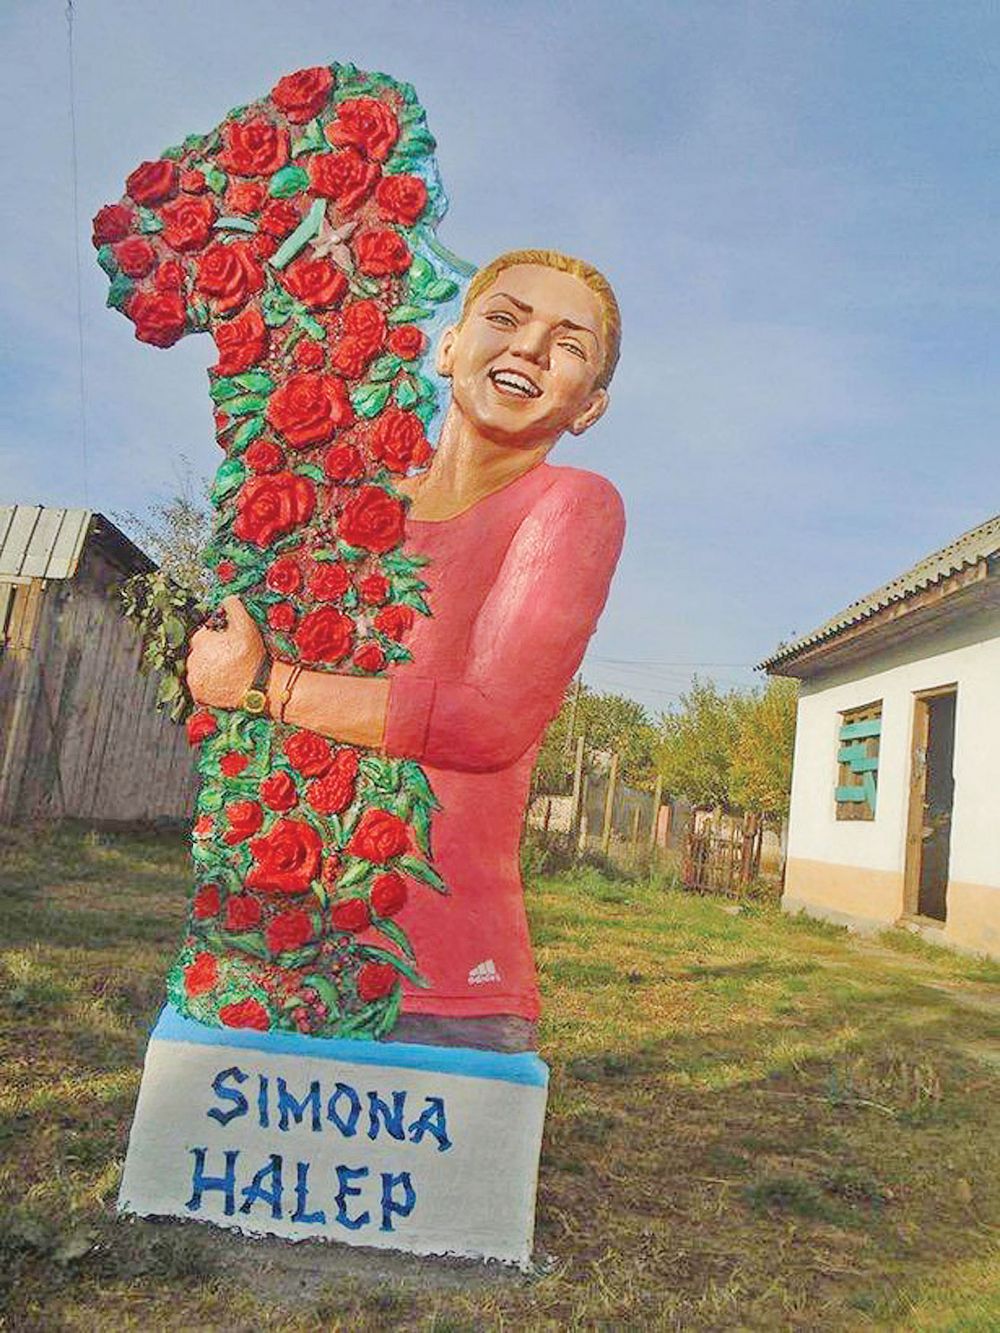 Simona Halep, asteptata in Olt sa-si ridice statuia 2m si 150 kg: "Am facut-o in trei zile!" FOTO_1